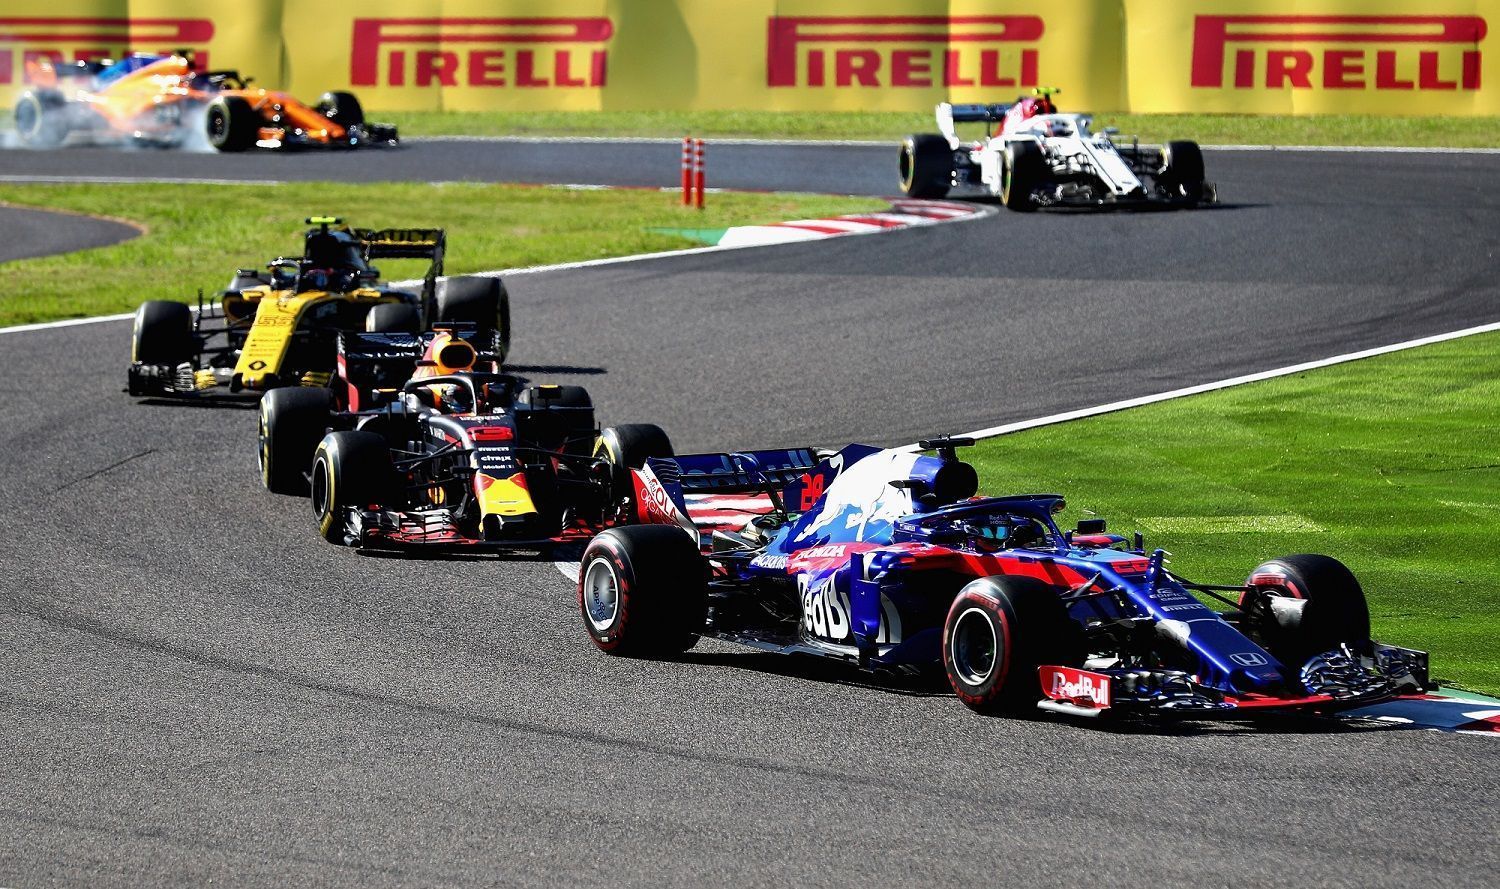 Christian Horner, Toro Rosso ahead of Red Bull, Renault